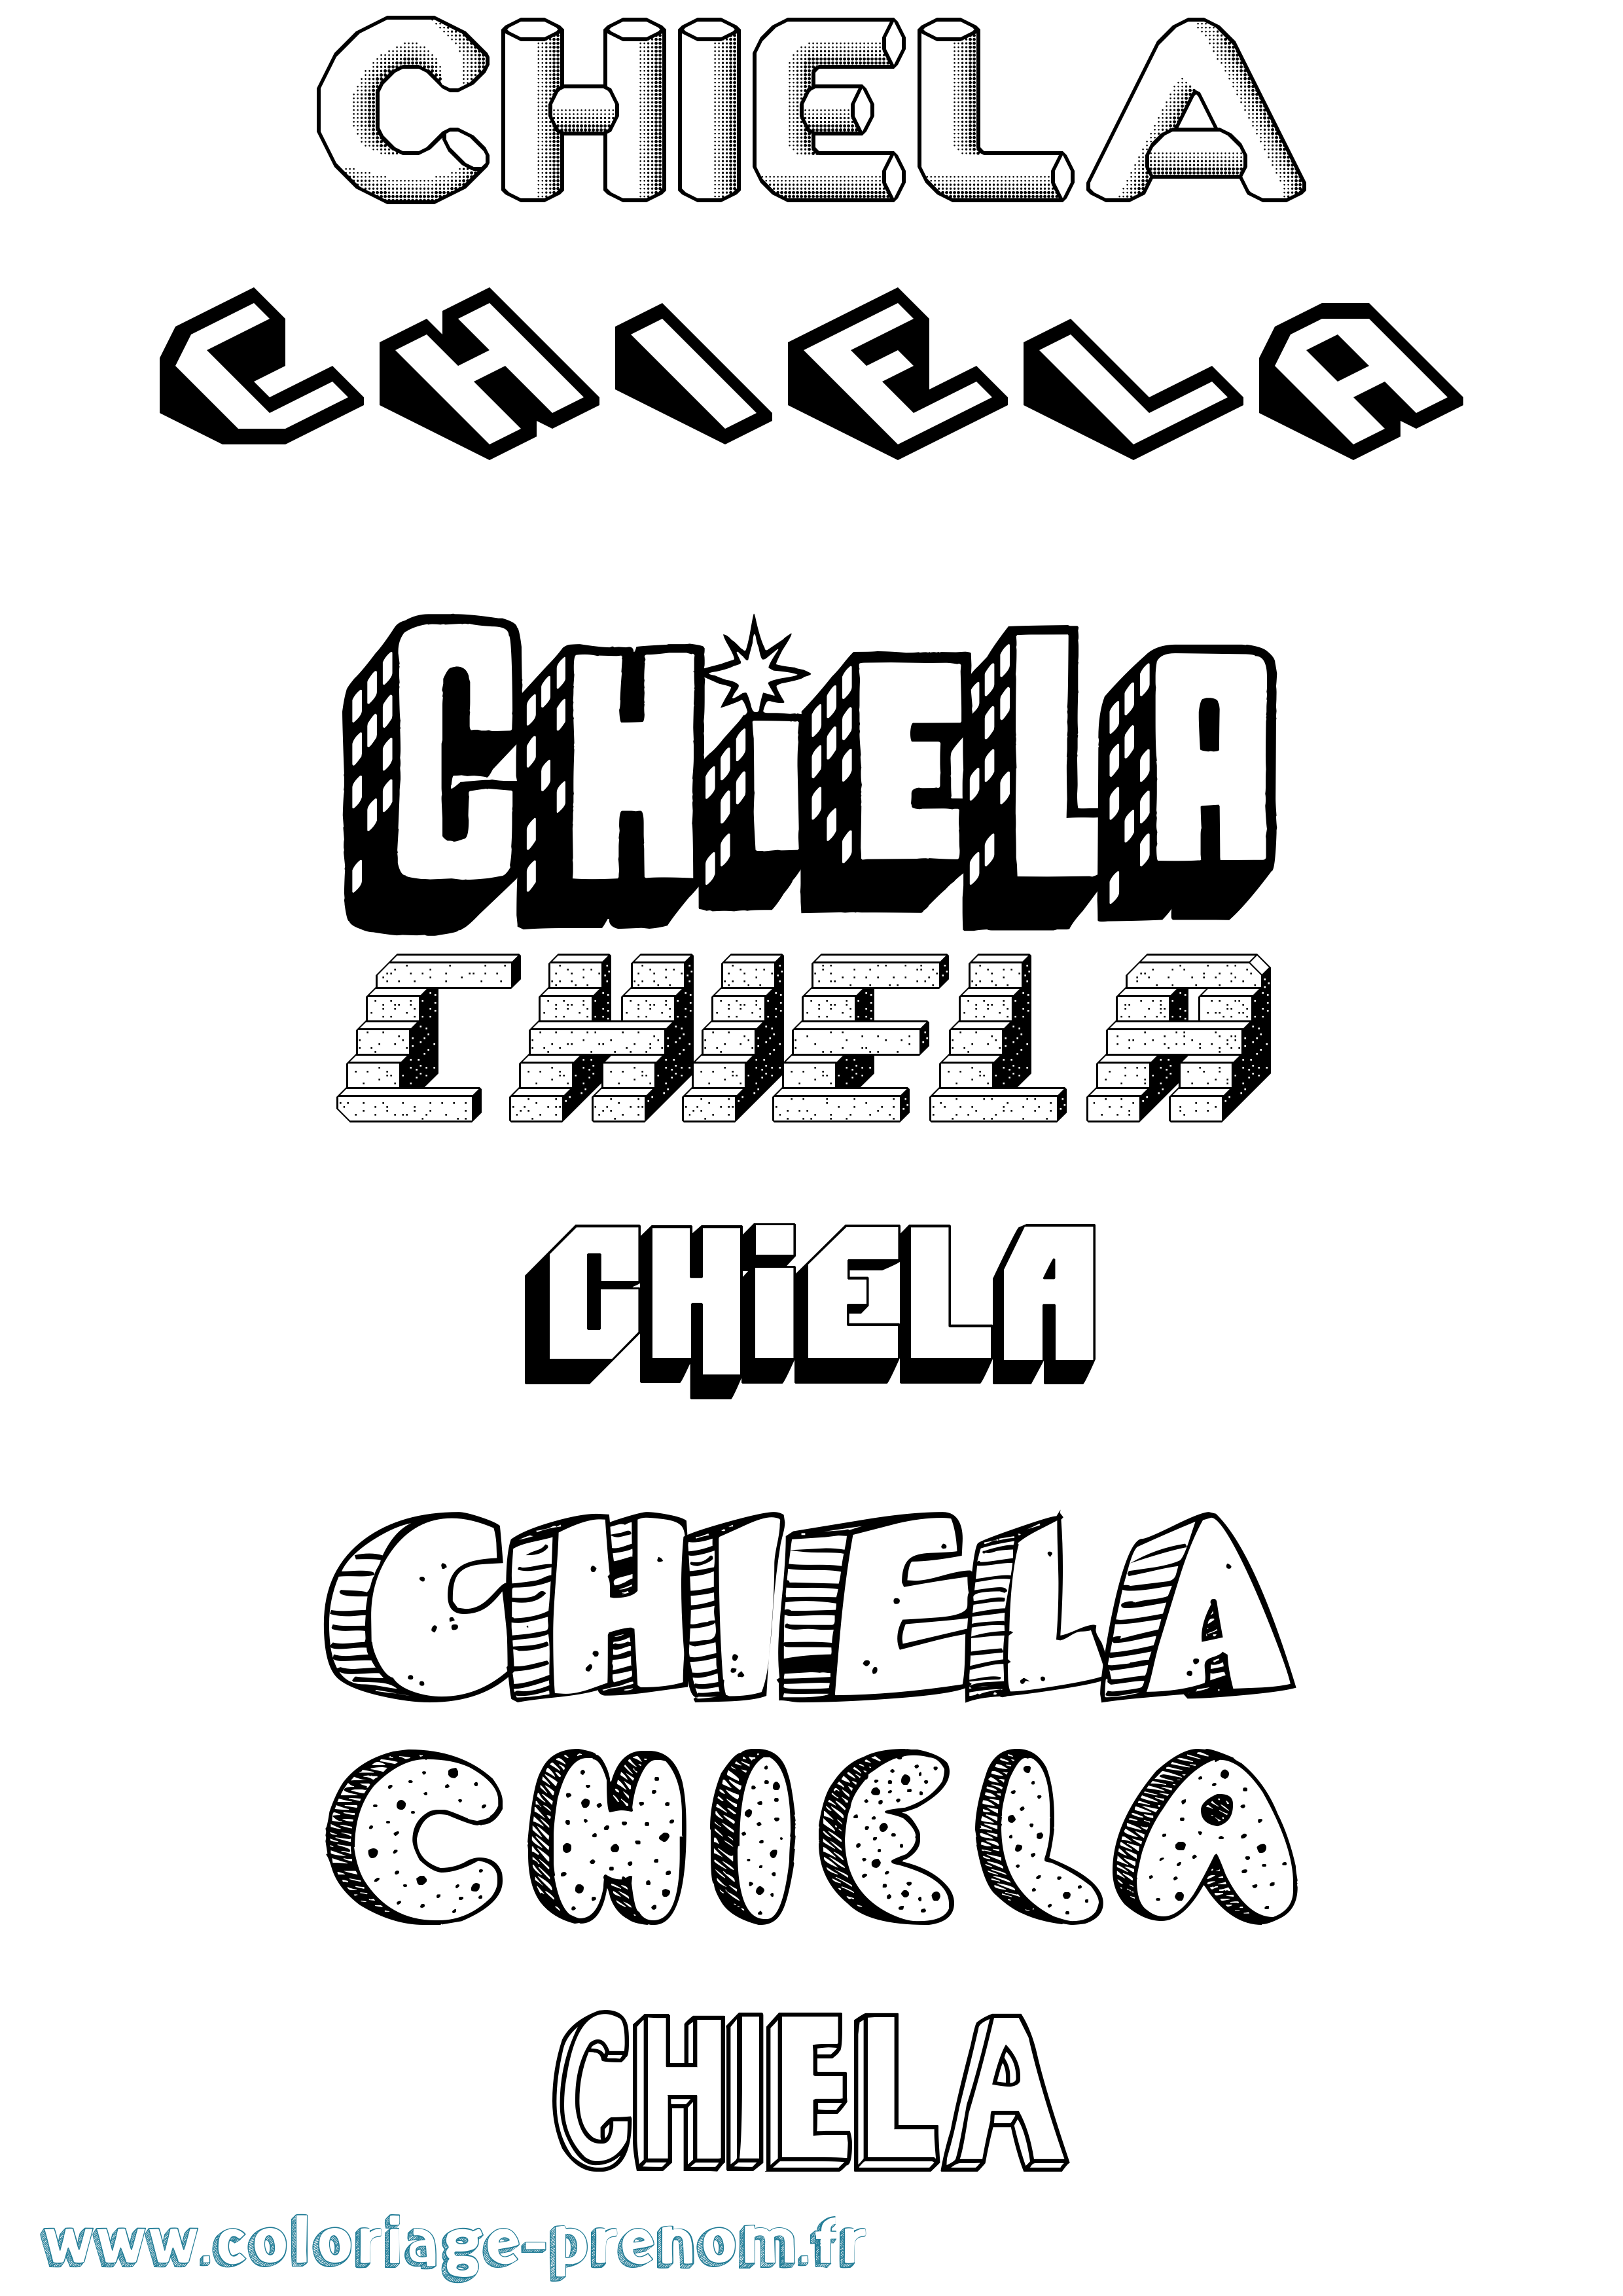 Coloriage prénom Chiela Effet 3D